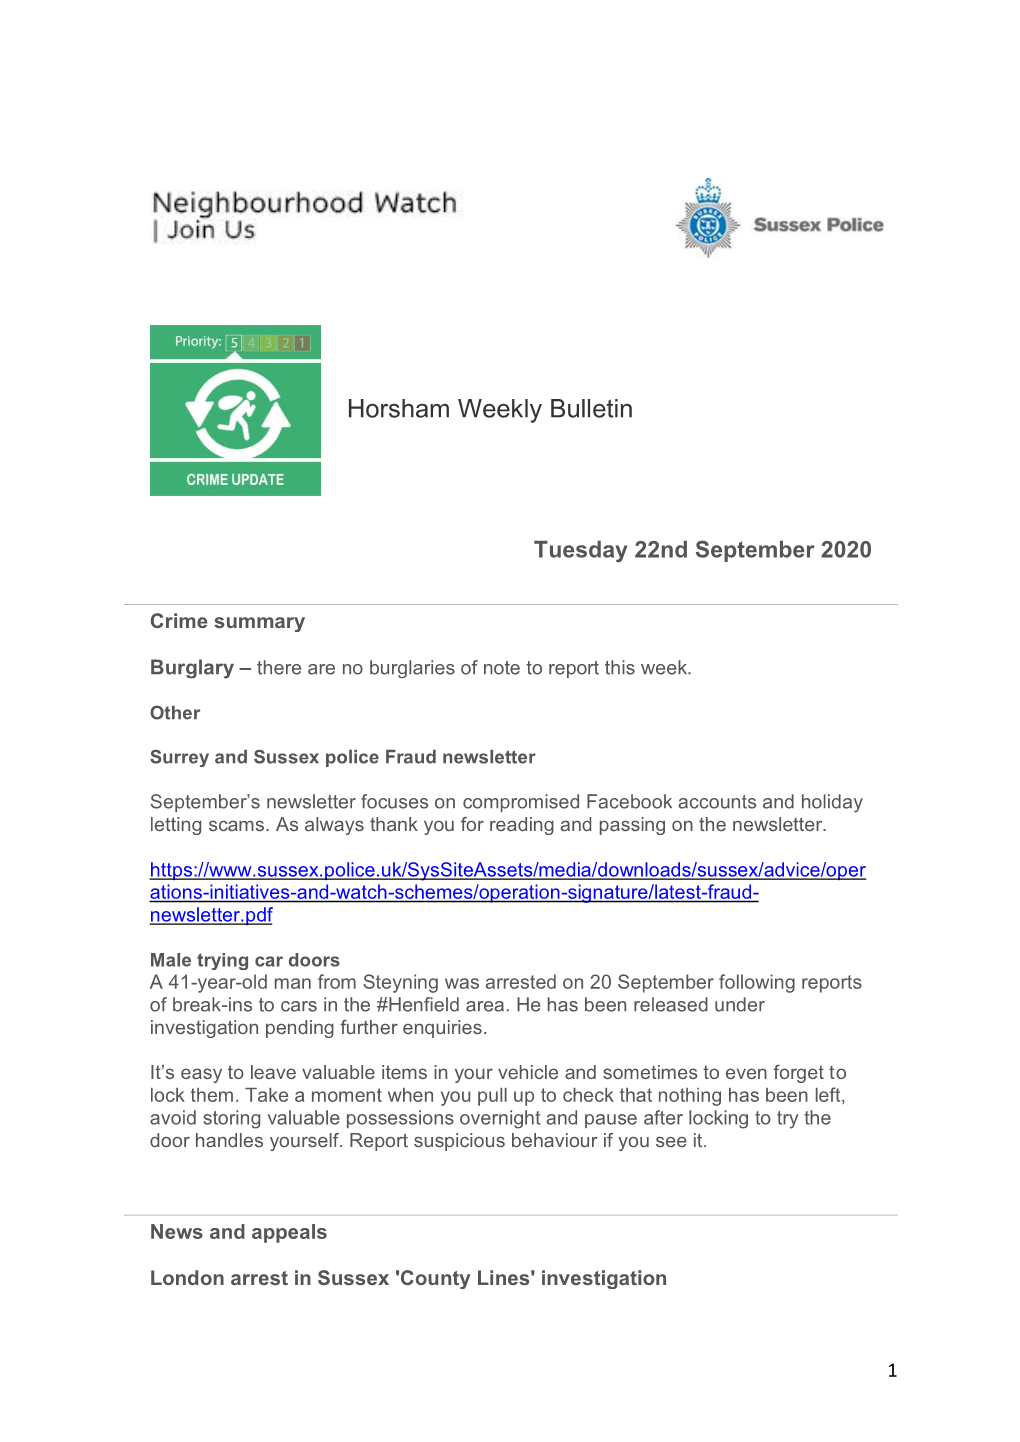 Horsham Weekly Bulletin